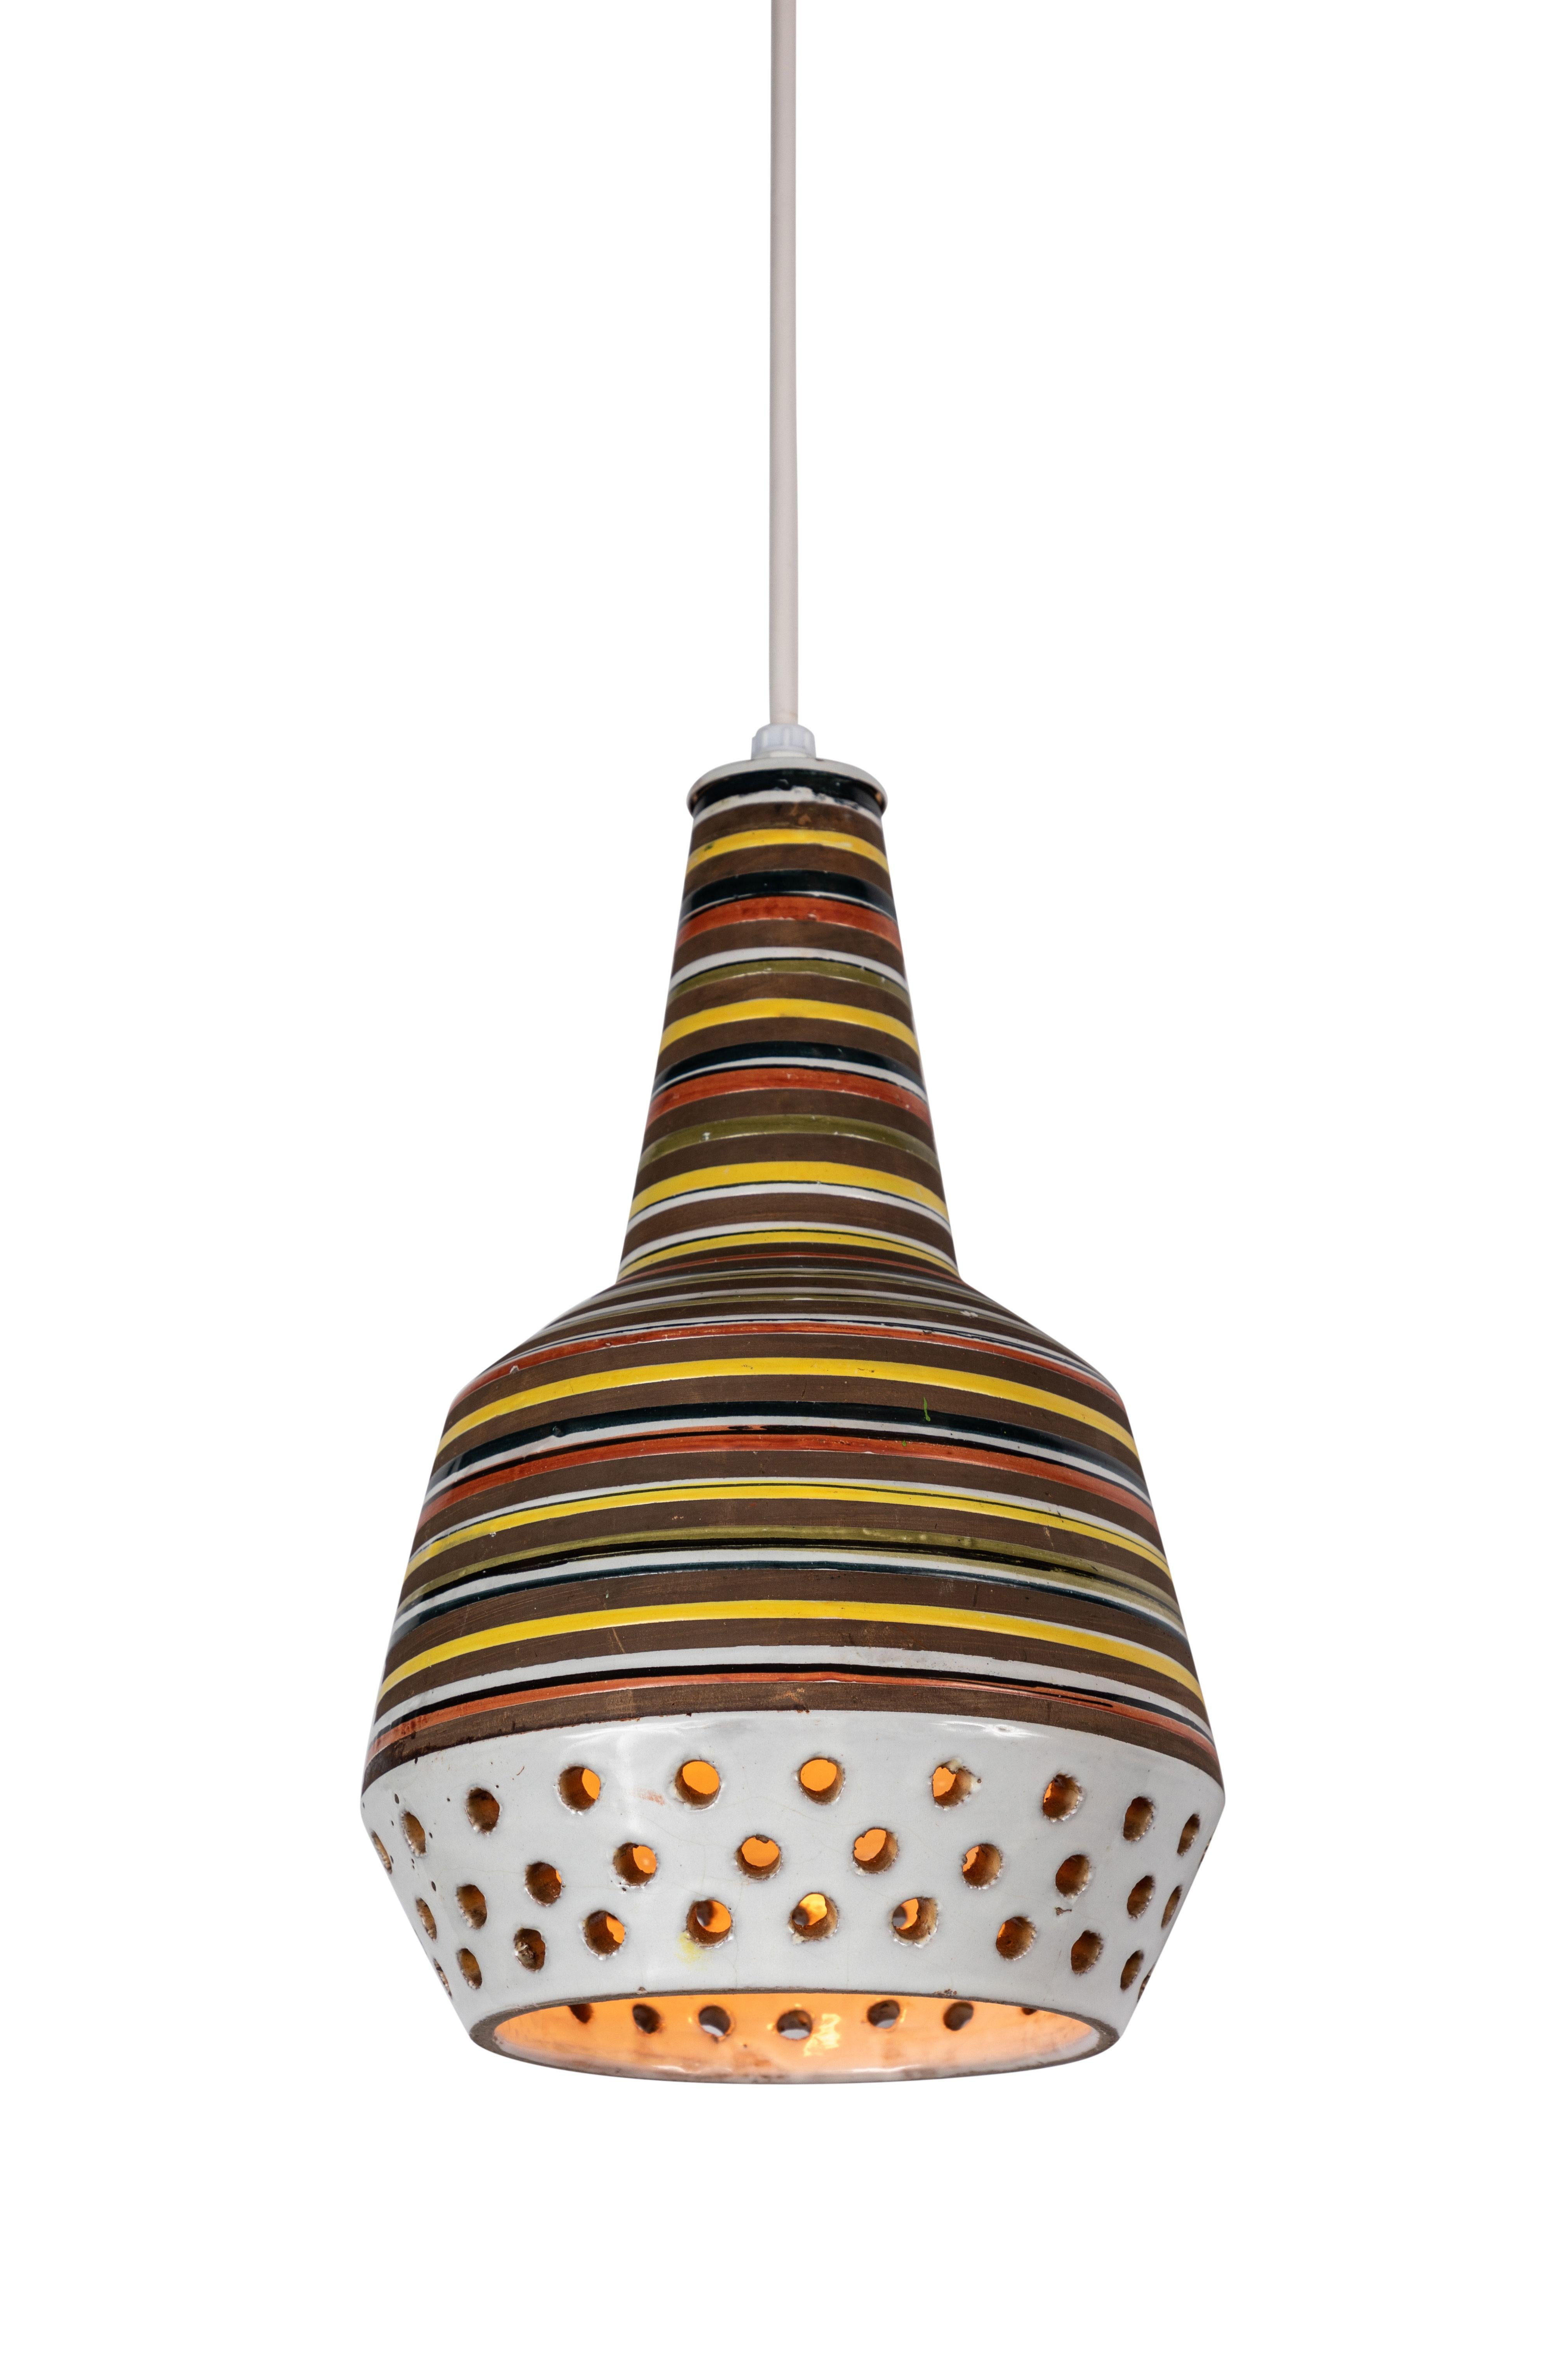 Mid-20th Century 1950s Aldo Londi Ceramic Bitossi Pendant Lamp for Italian Raymor